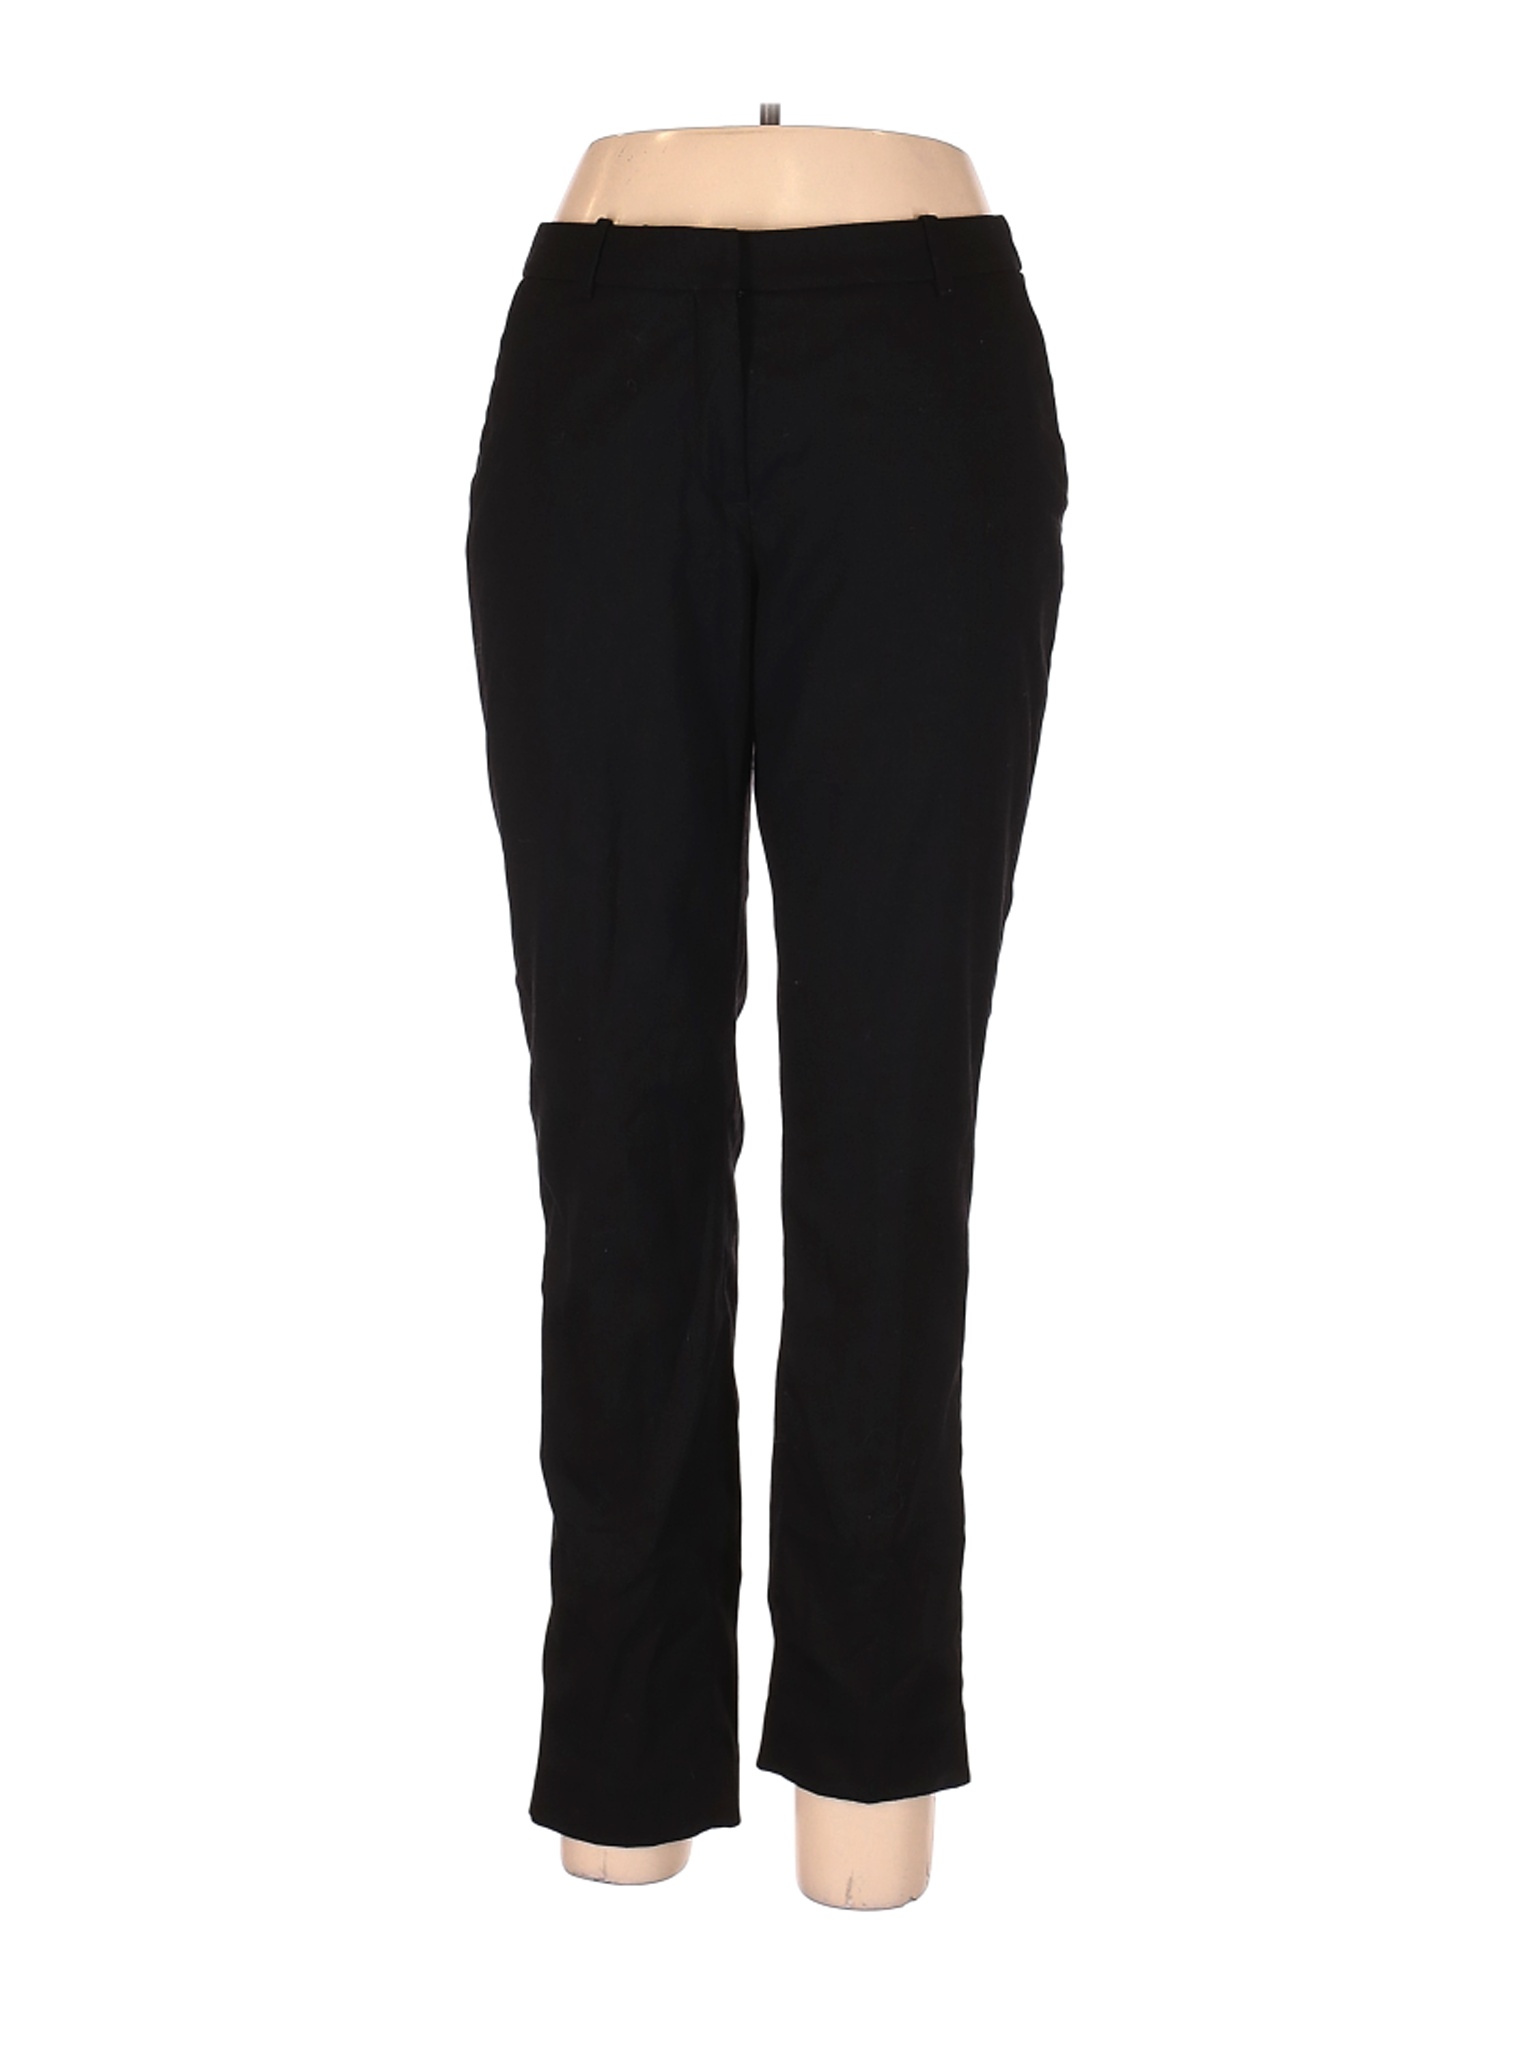 H&M Women Black Dress Pants 10 | eBay